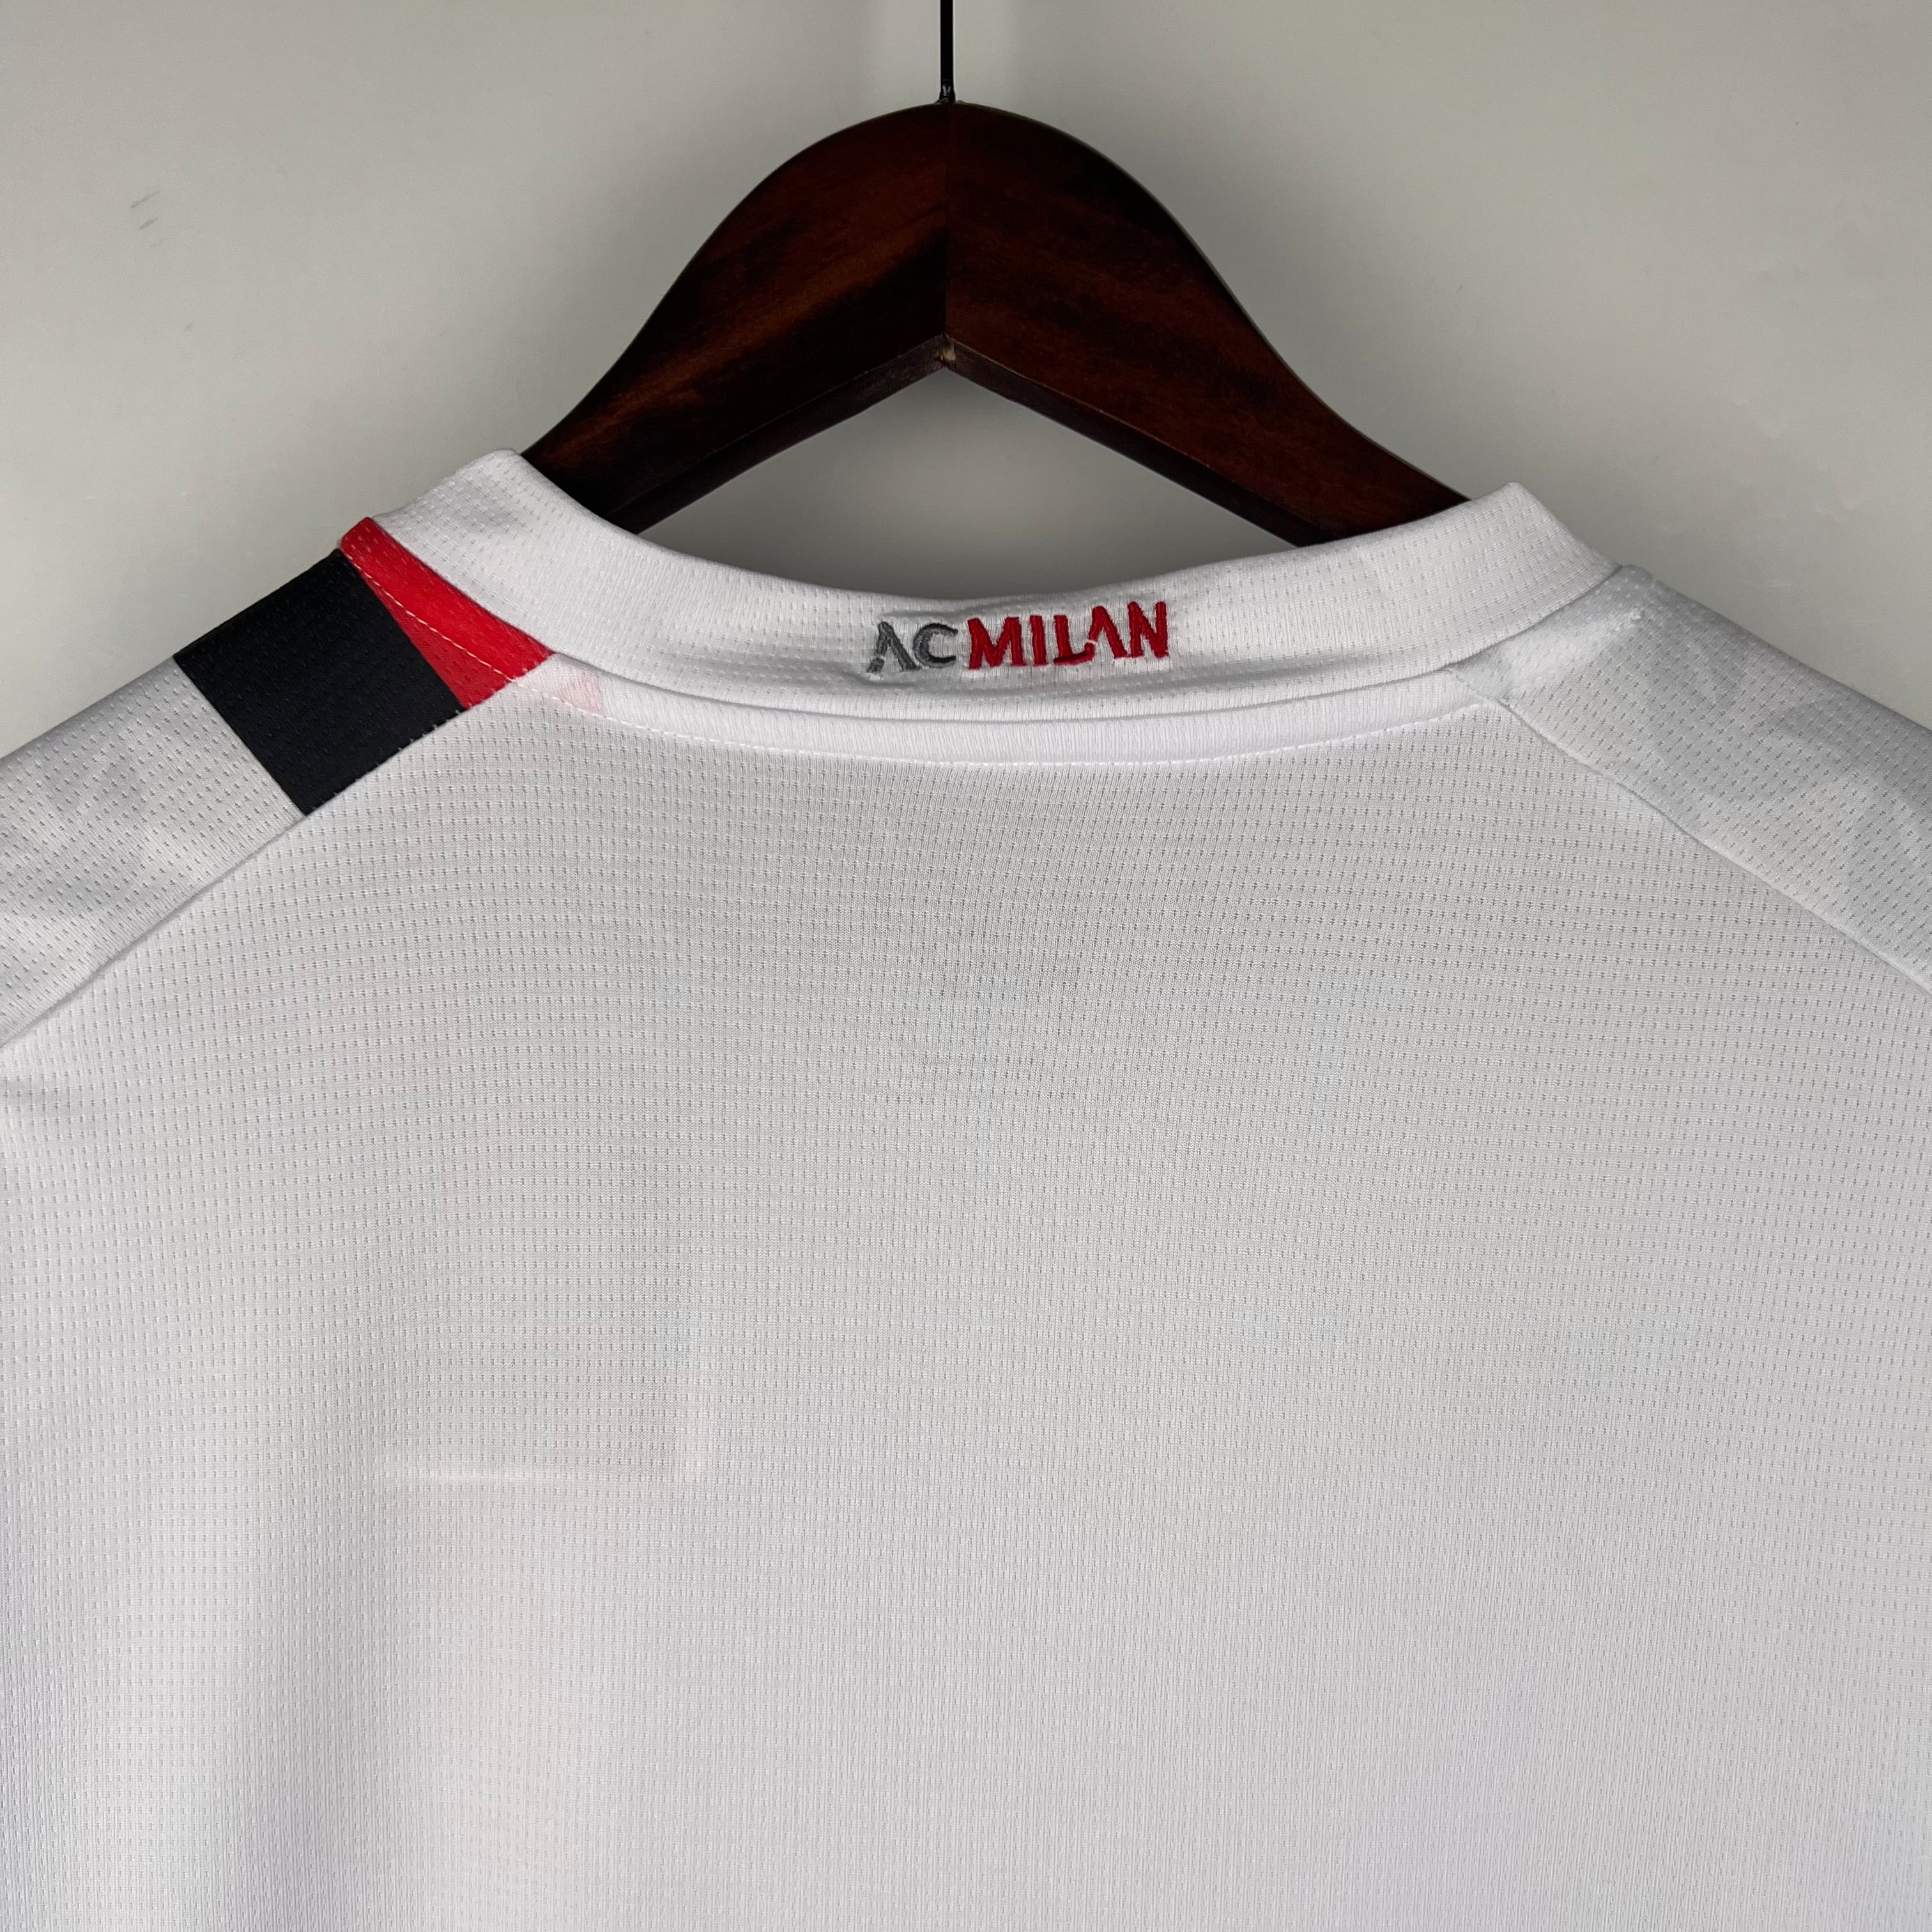 Favorite AC Milan home kit since 1990? : r/ACMilan